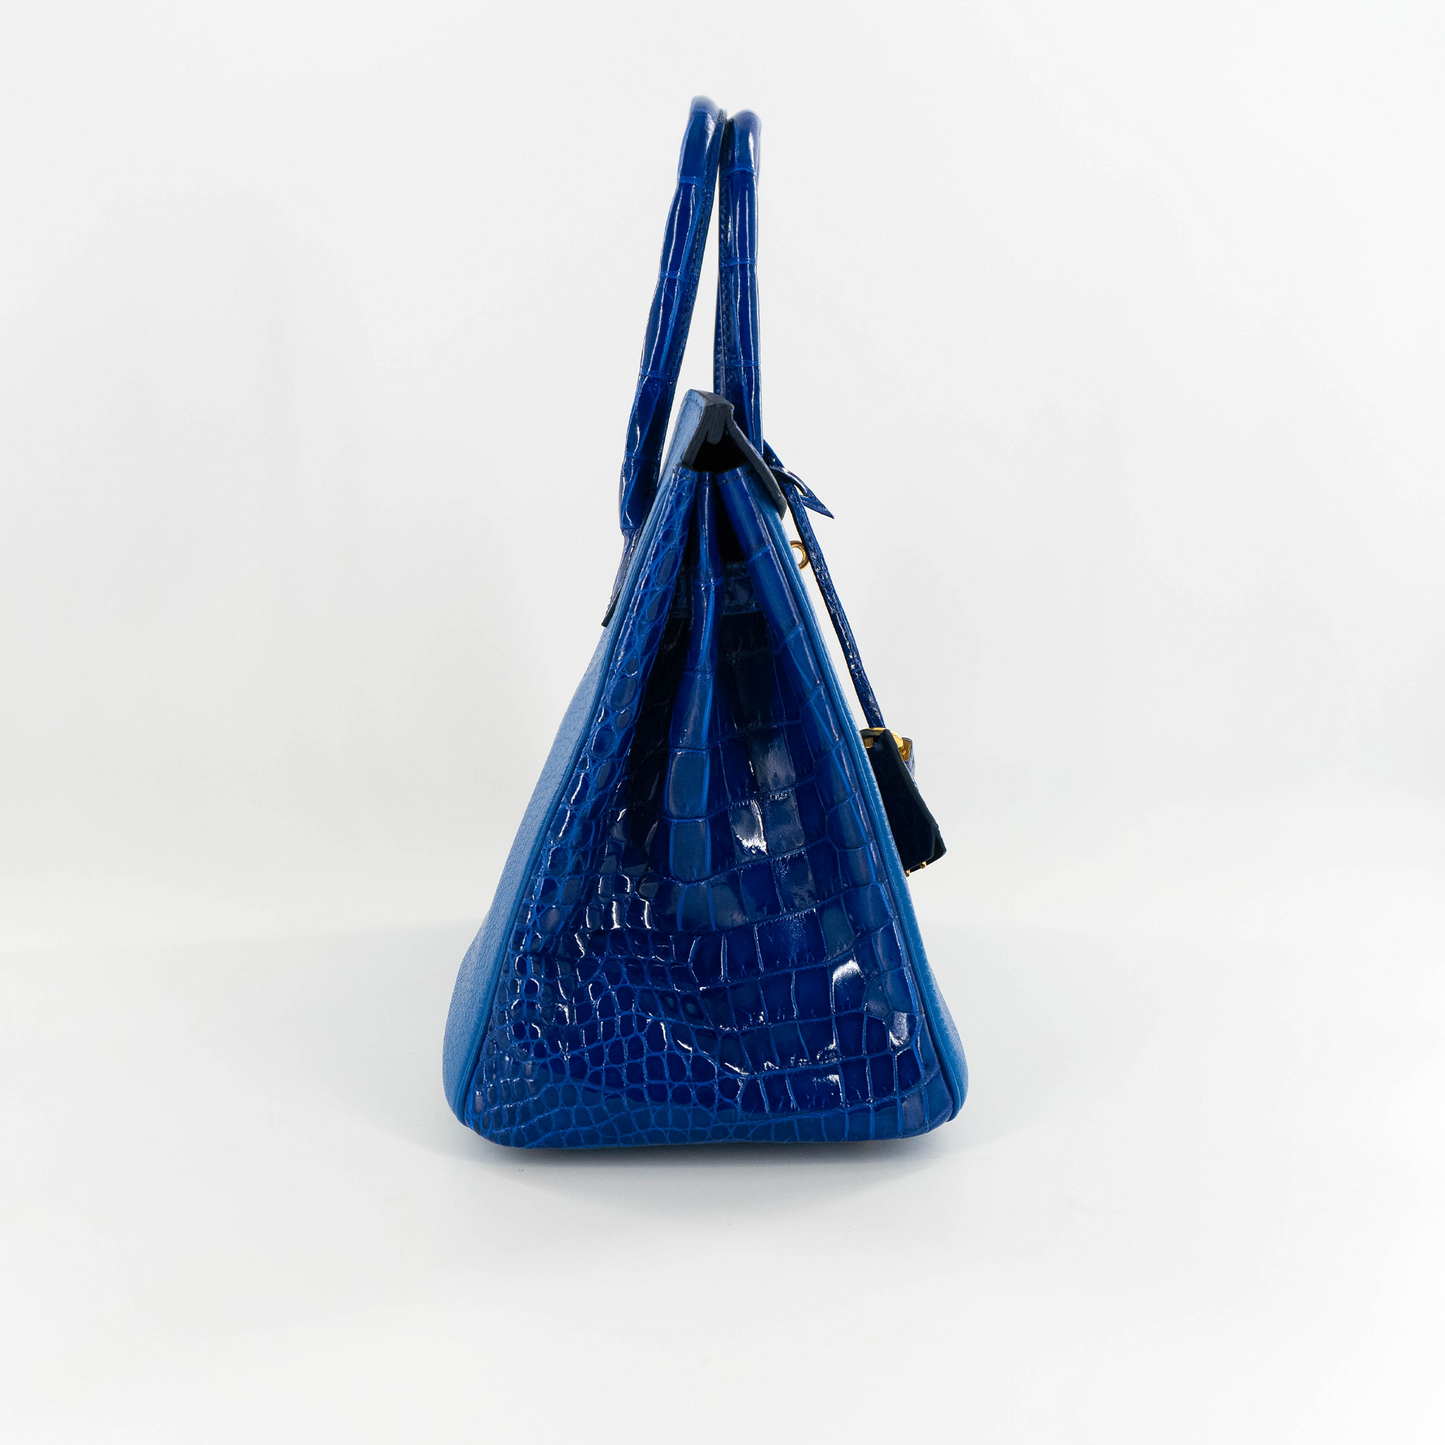 Duchess Handbag in Royal Blue Crocodile Belly Skin & Leather